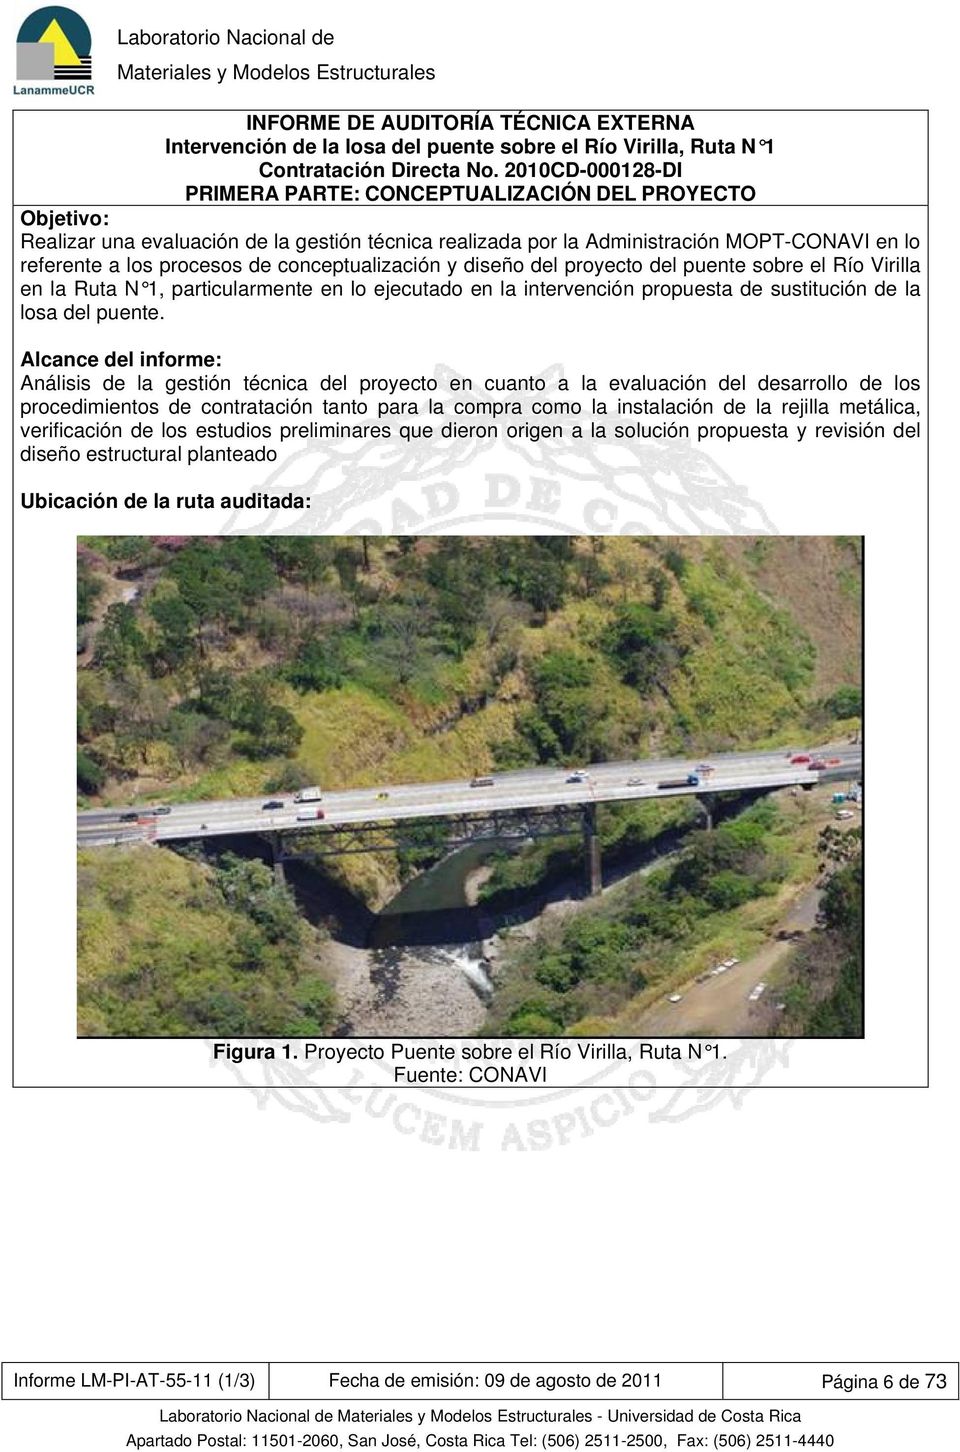 conceptualización y diseño del proyecto del puente sobre el Río Virilla en la Ruta N 1, particularmente en lo ejecutado en la intervención propuesta de sustitución de la losa del puente.